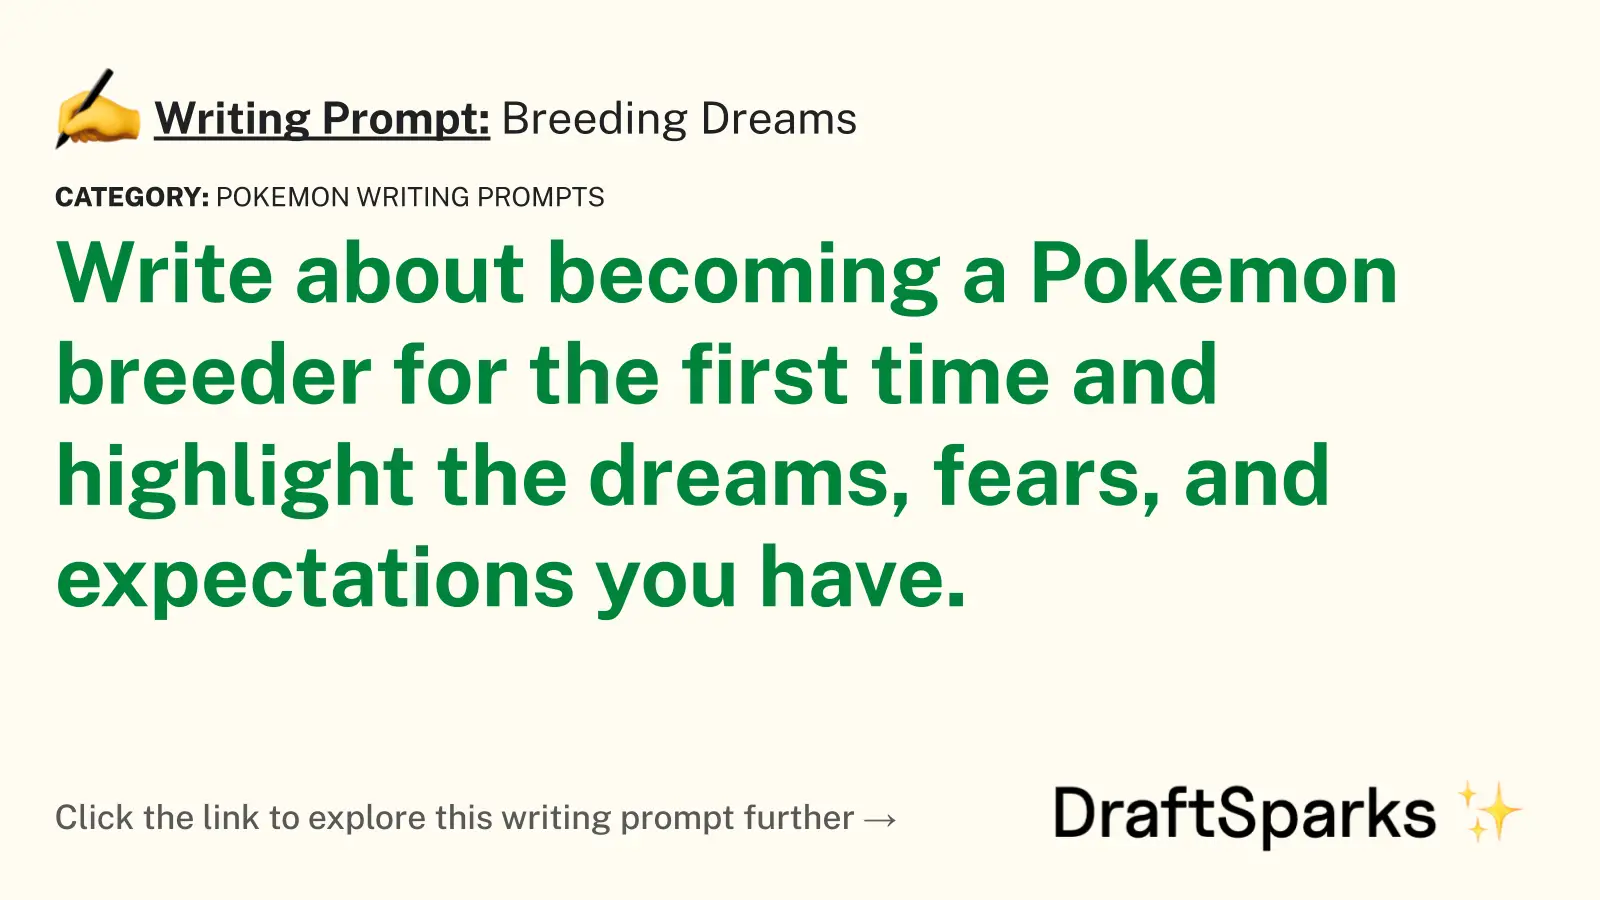 Breeding Dreams